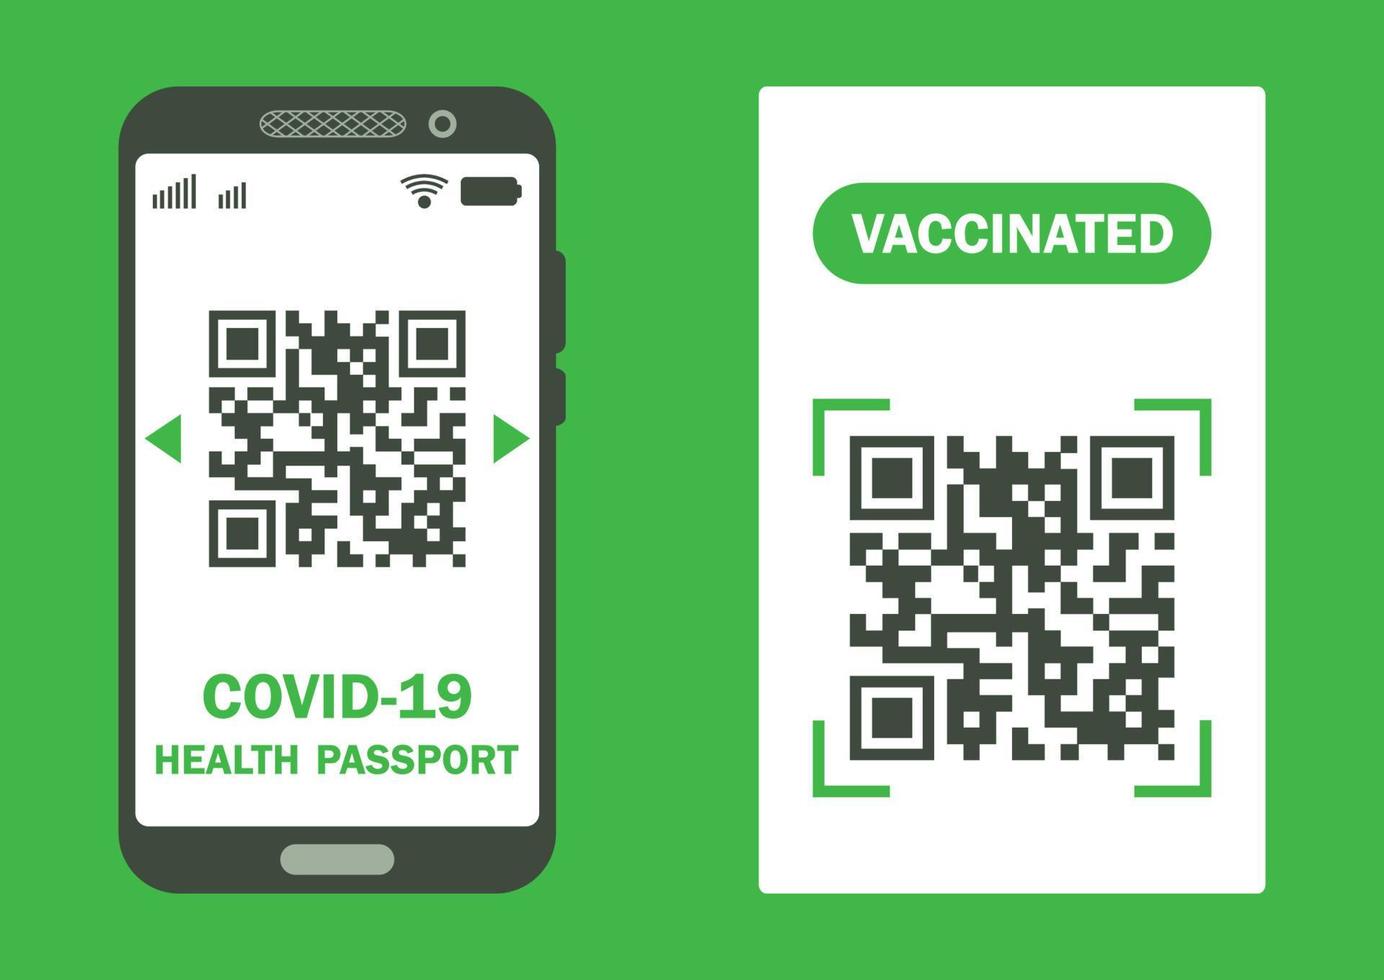 papel e documento digital para mostrar que uma pessoa foi vacinada com a vacina covid-19. certificado de imunidade covid-19 para uma viagem segura. passaporte de saúde eletrônico e em papel vetor